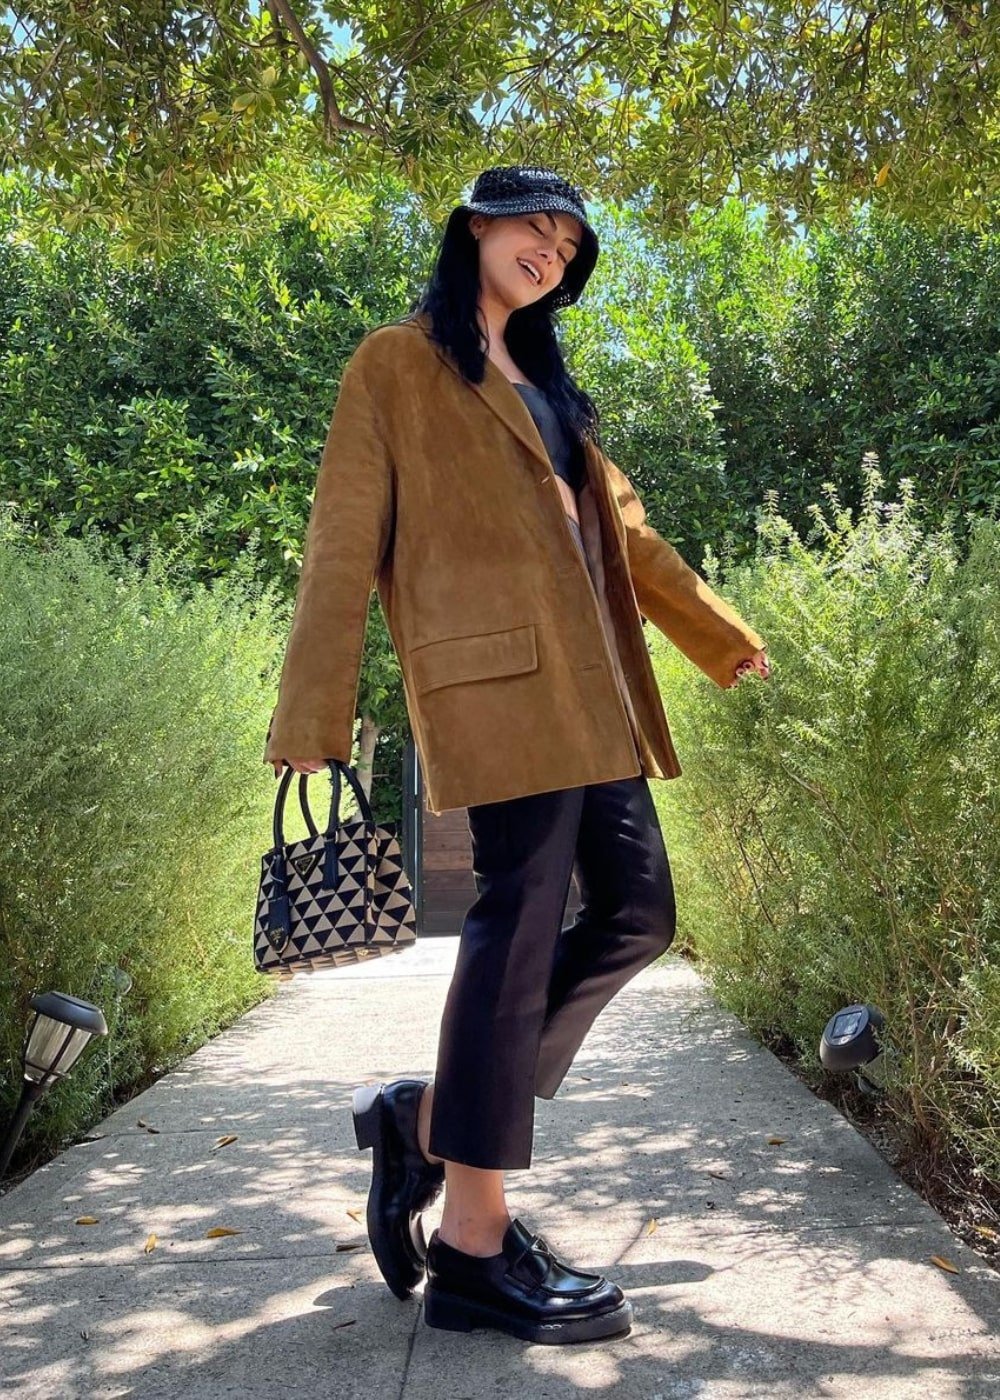 Camila Mendes - calça preta, top, casaco marrom, bucket hat e mocassim - Camila Mendes - Outono - em pé na rua - https://stealthelook.com.br